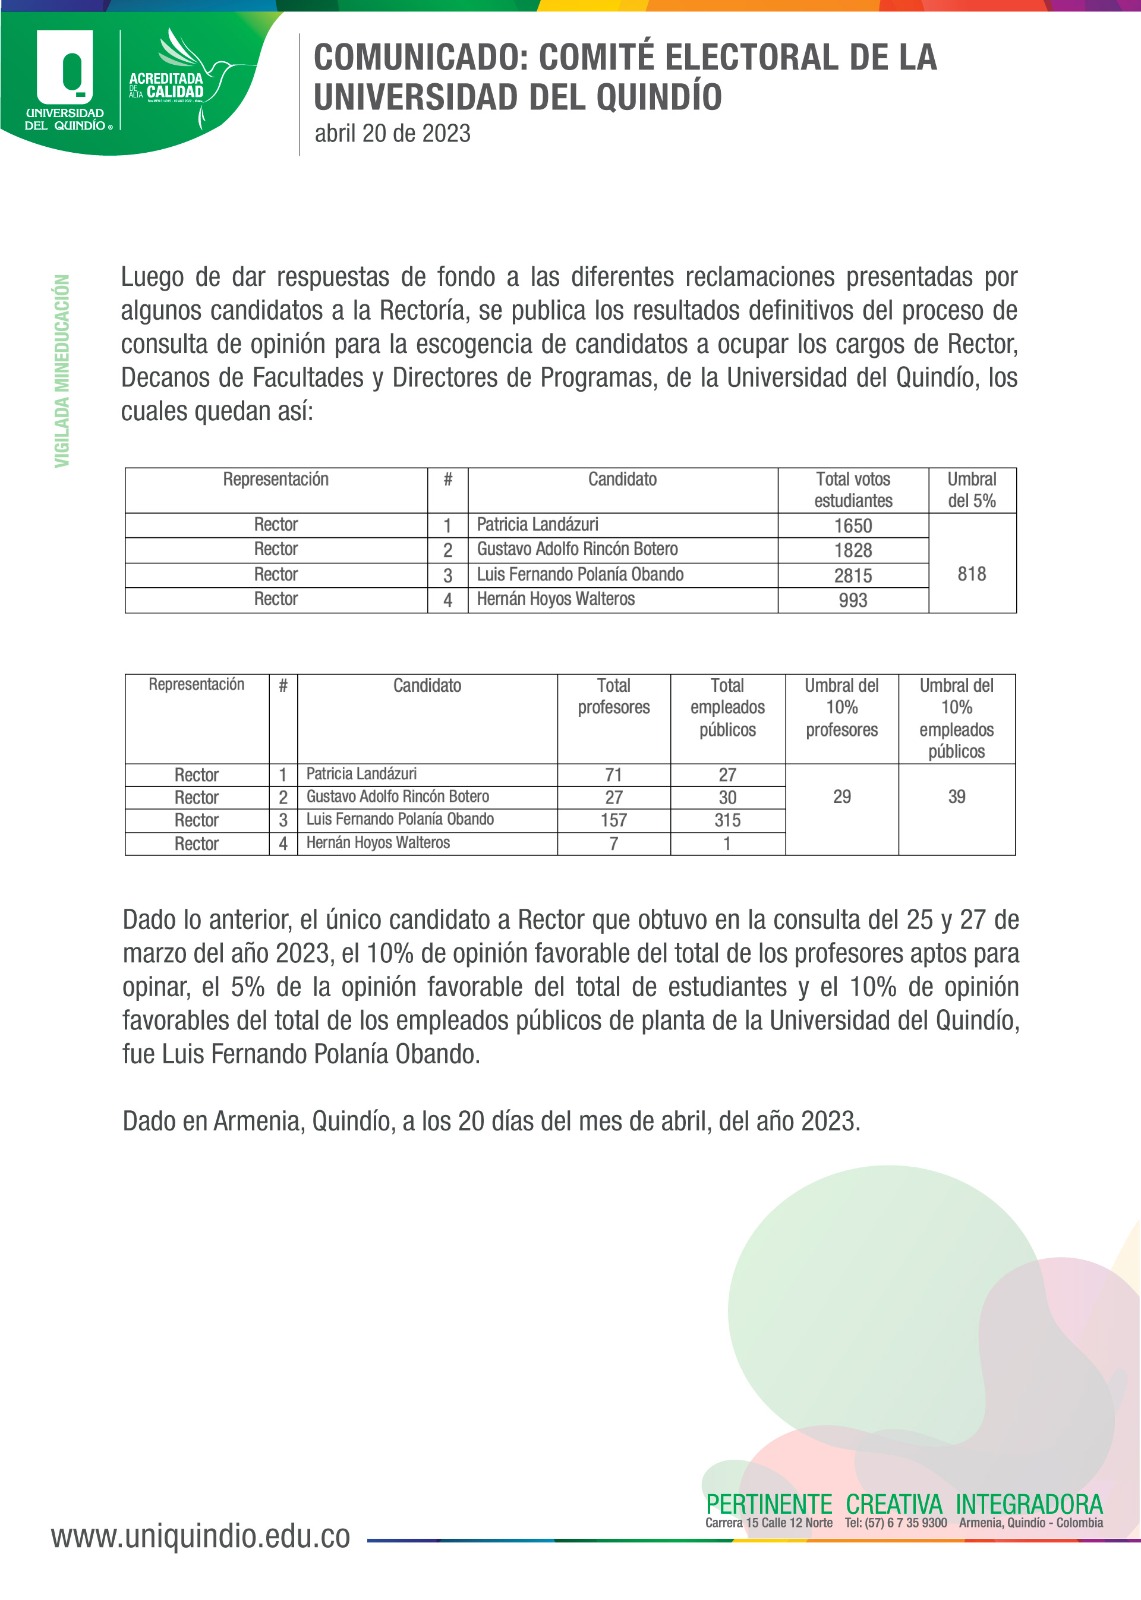 Comunicado: Comité Electoral Universidad del Quindío